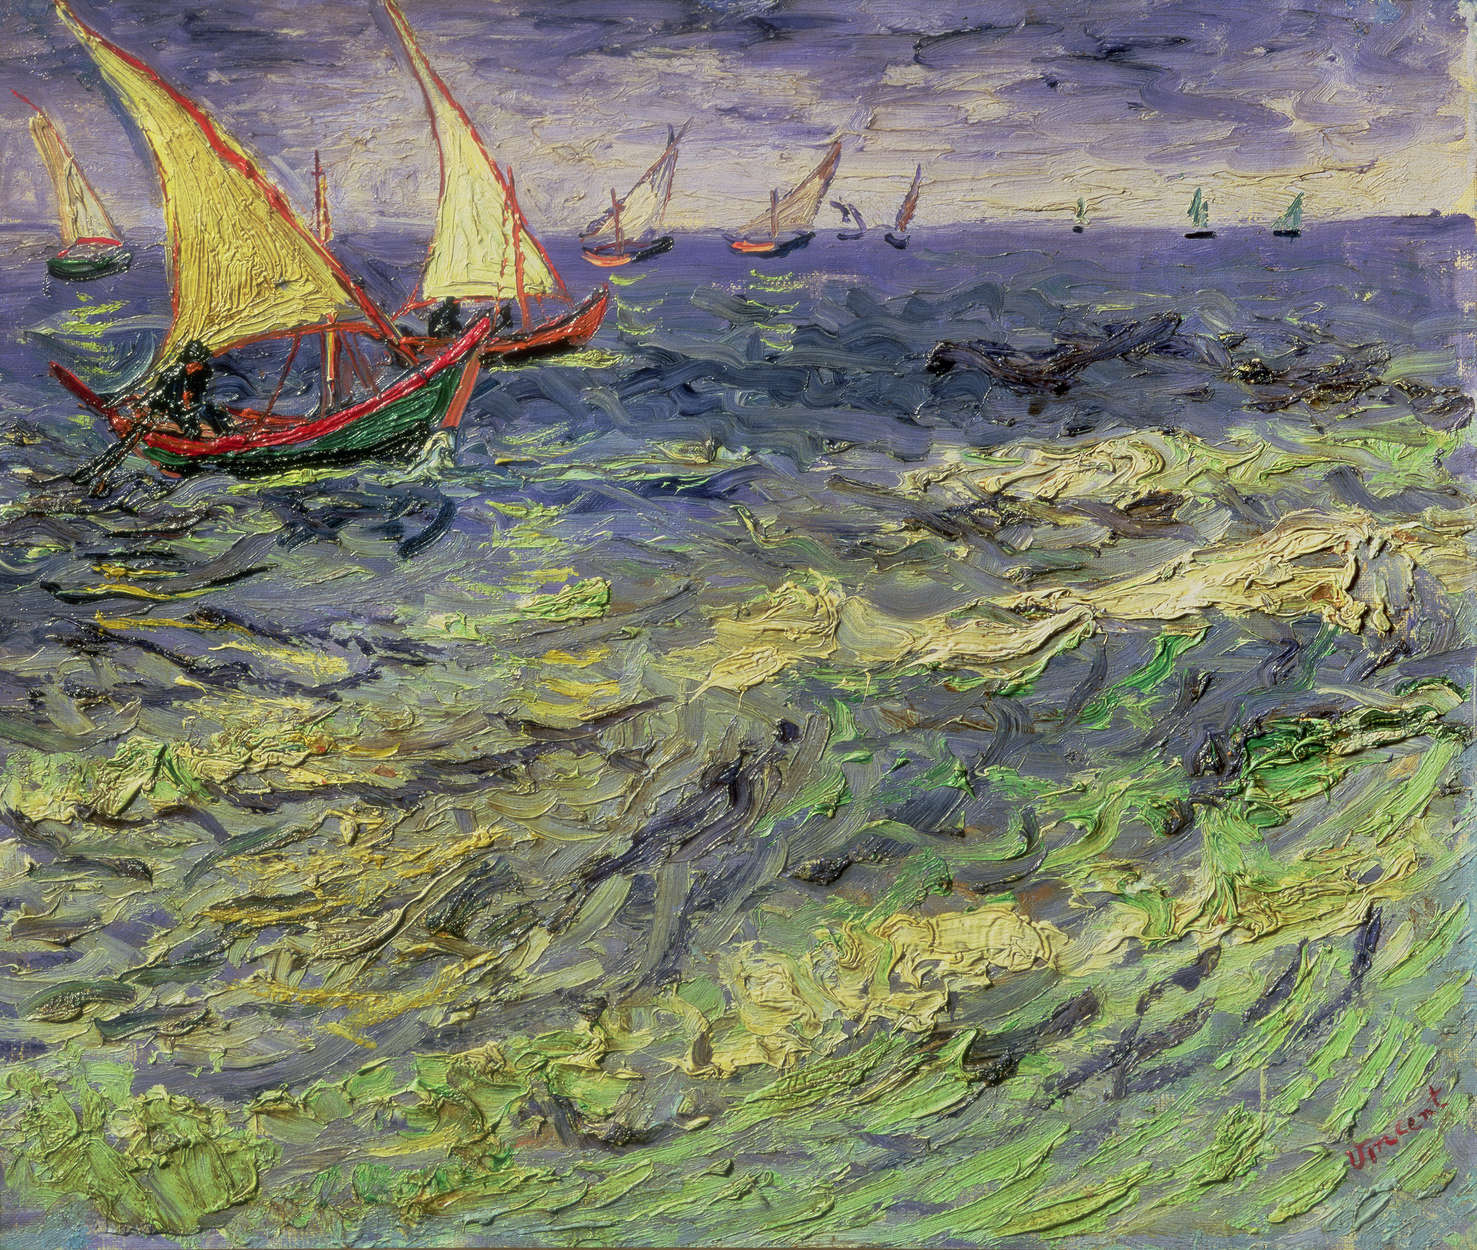             Papier peint "Paysage marin près des Saintes-Maries " de Vincent van Gogh
        